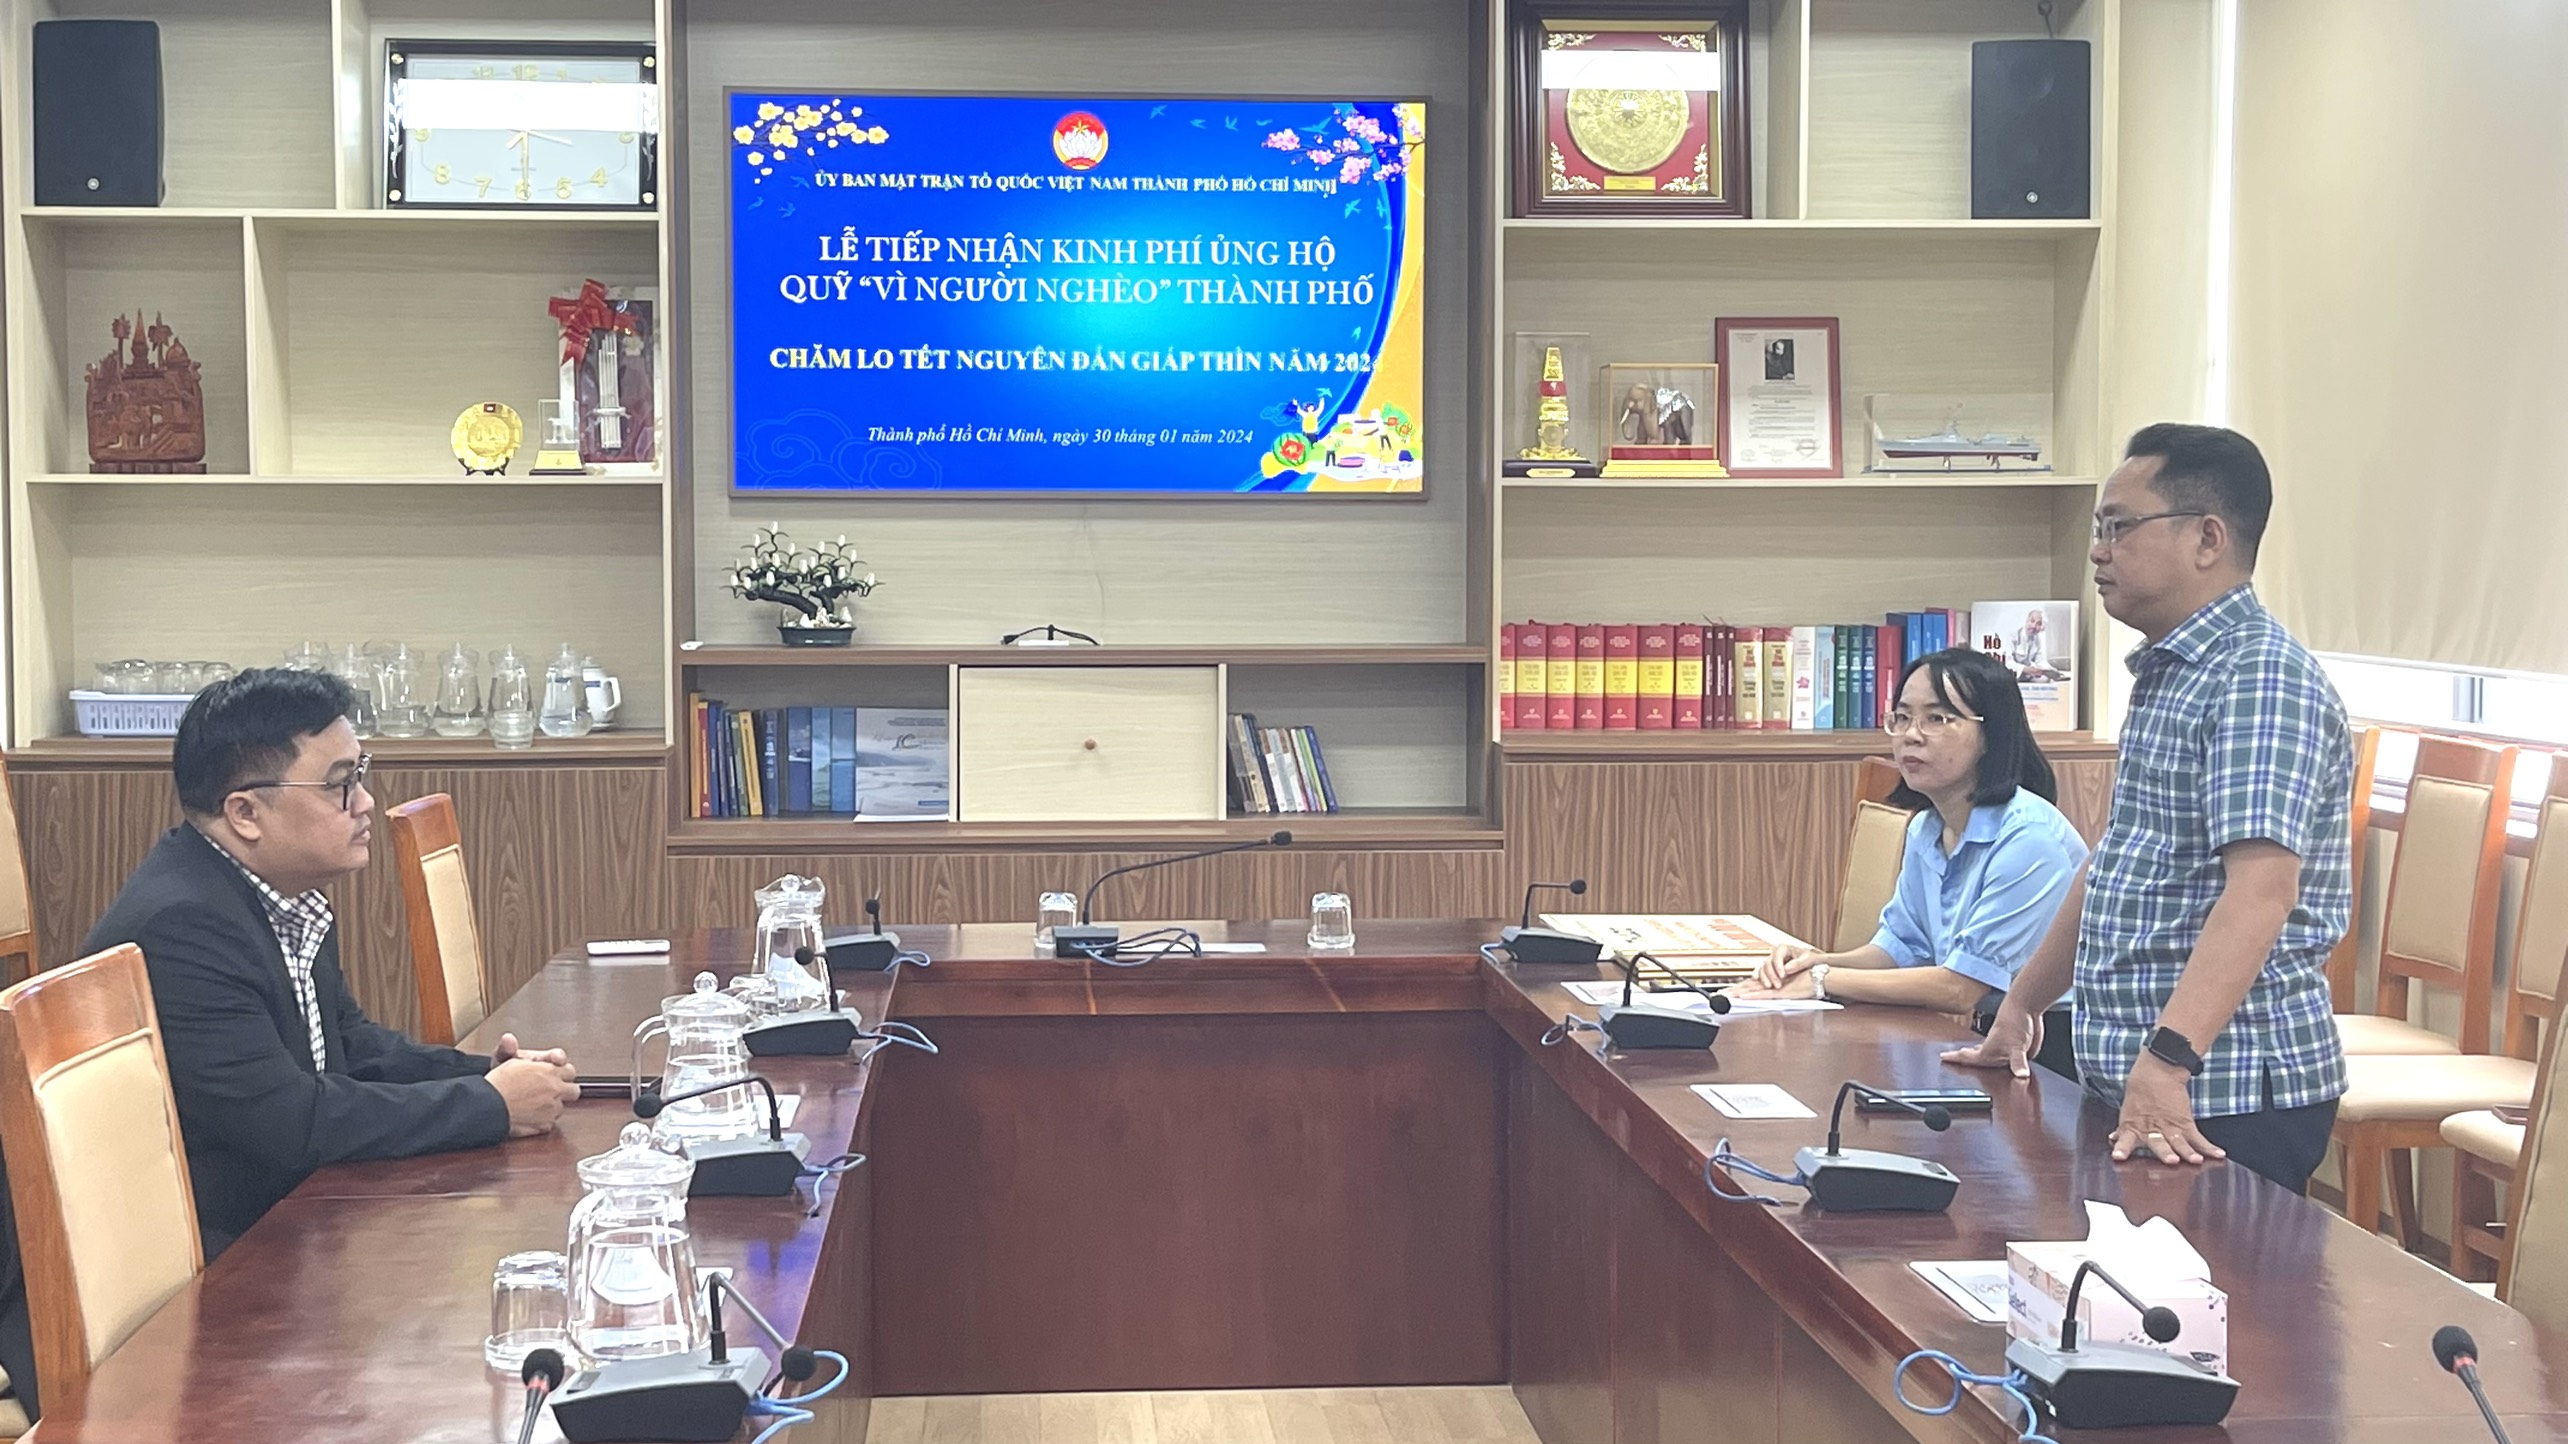 Phát biểu tại buổi tiếp nhận, Phó Chủ tịch Ủy ban MTTQ Việt Nam Thành phố Hồ Chí Minh 